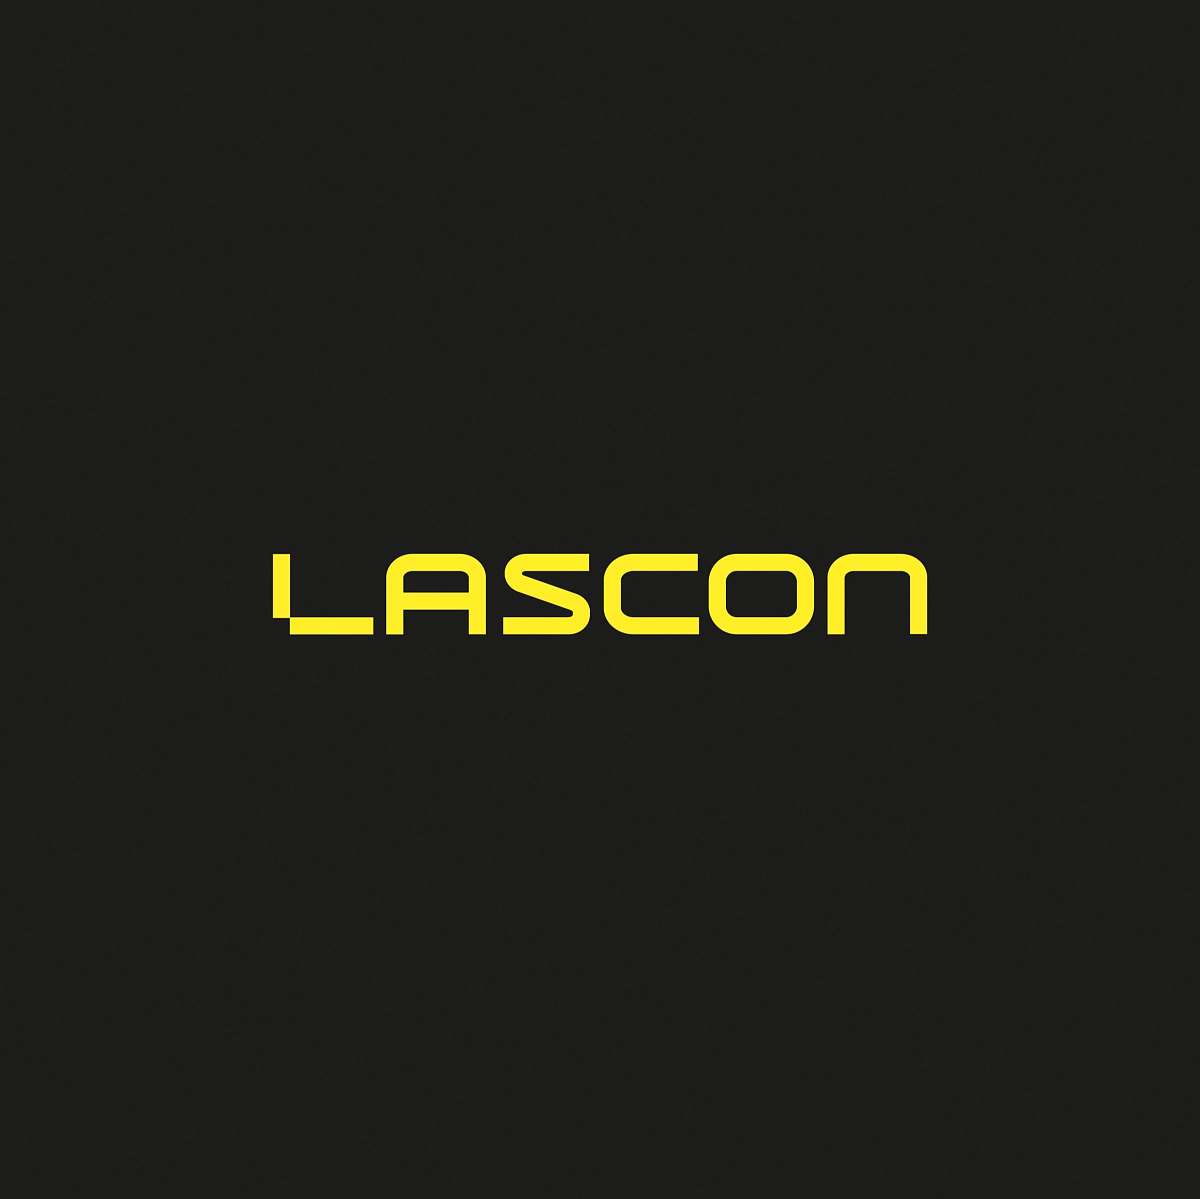 Lascon